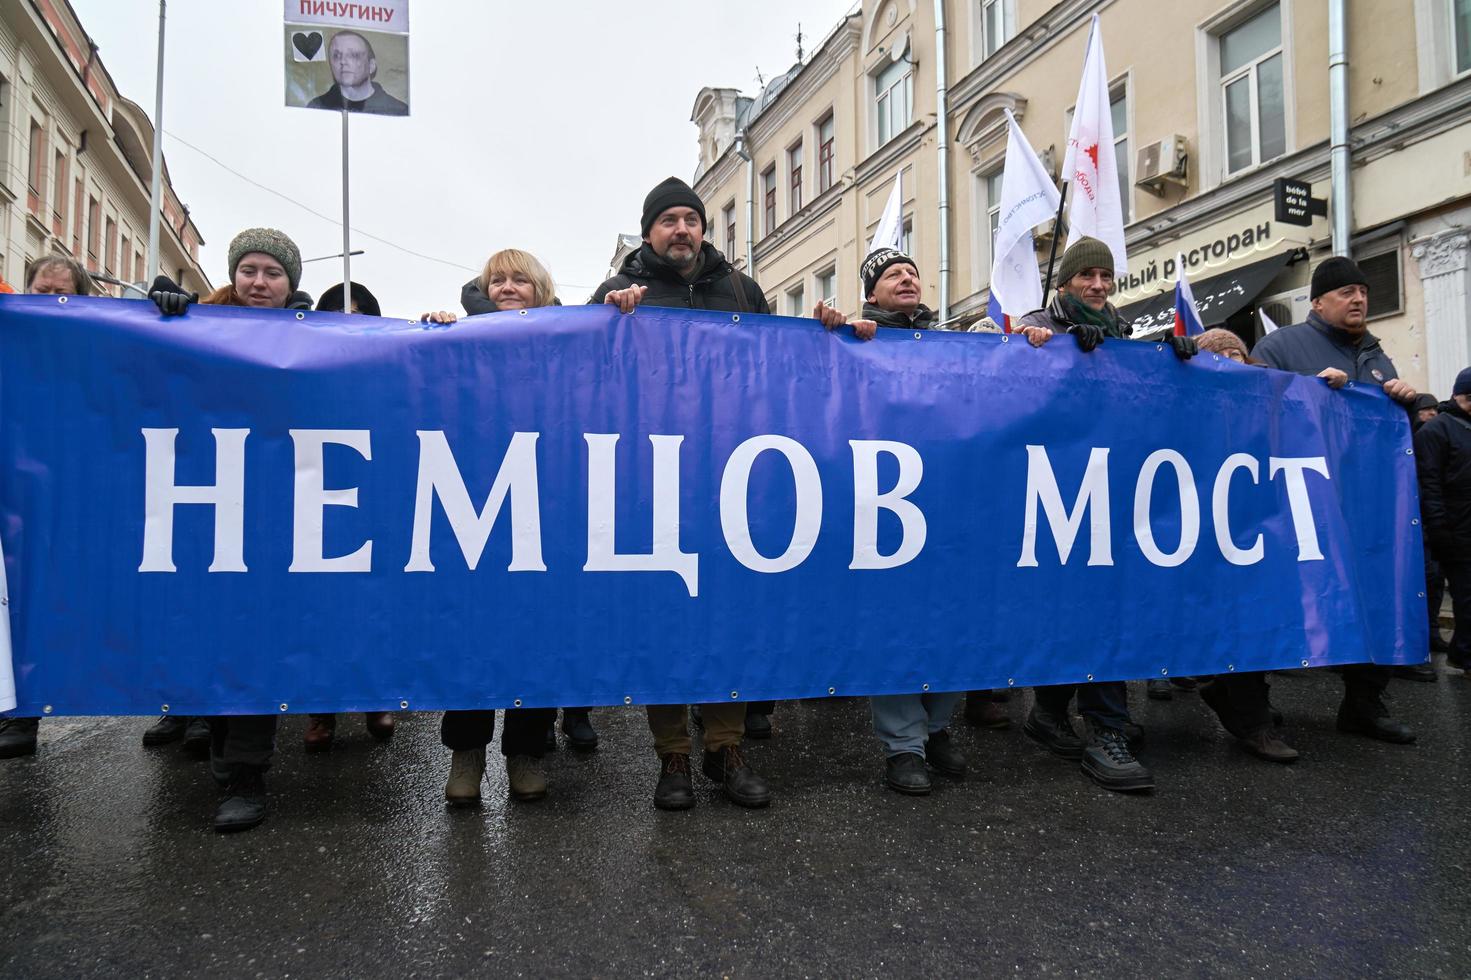 moscú, rusia - 24 de febrero de 2019. marcha conmemorativa de nemtsov. manifestantes que portaban una gran pancarta puente nemtsov - requisito para las autoridades de nombrar su nombre el puente en el que fue asesinado foto